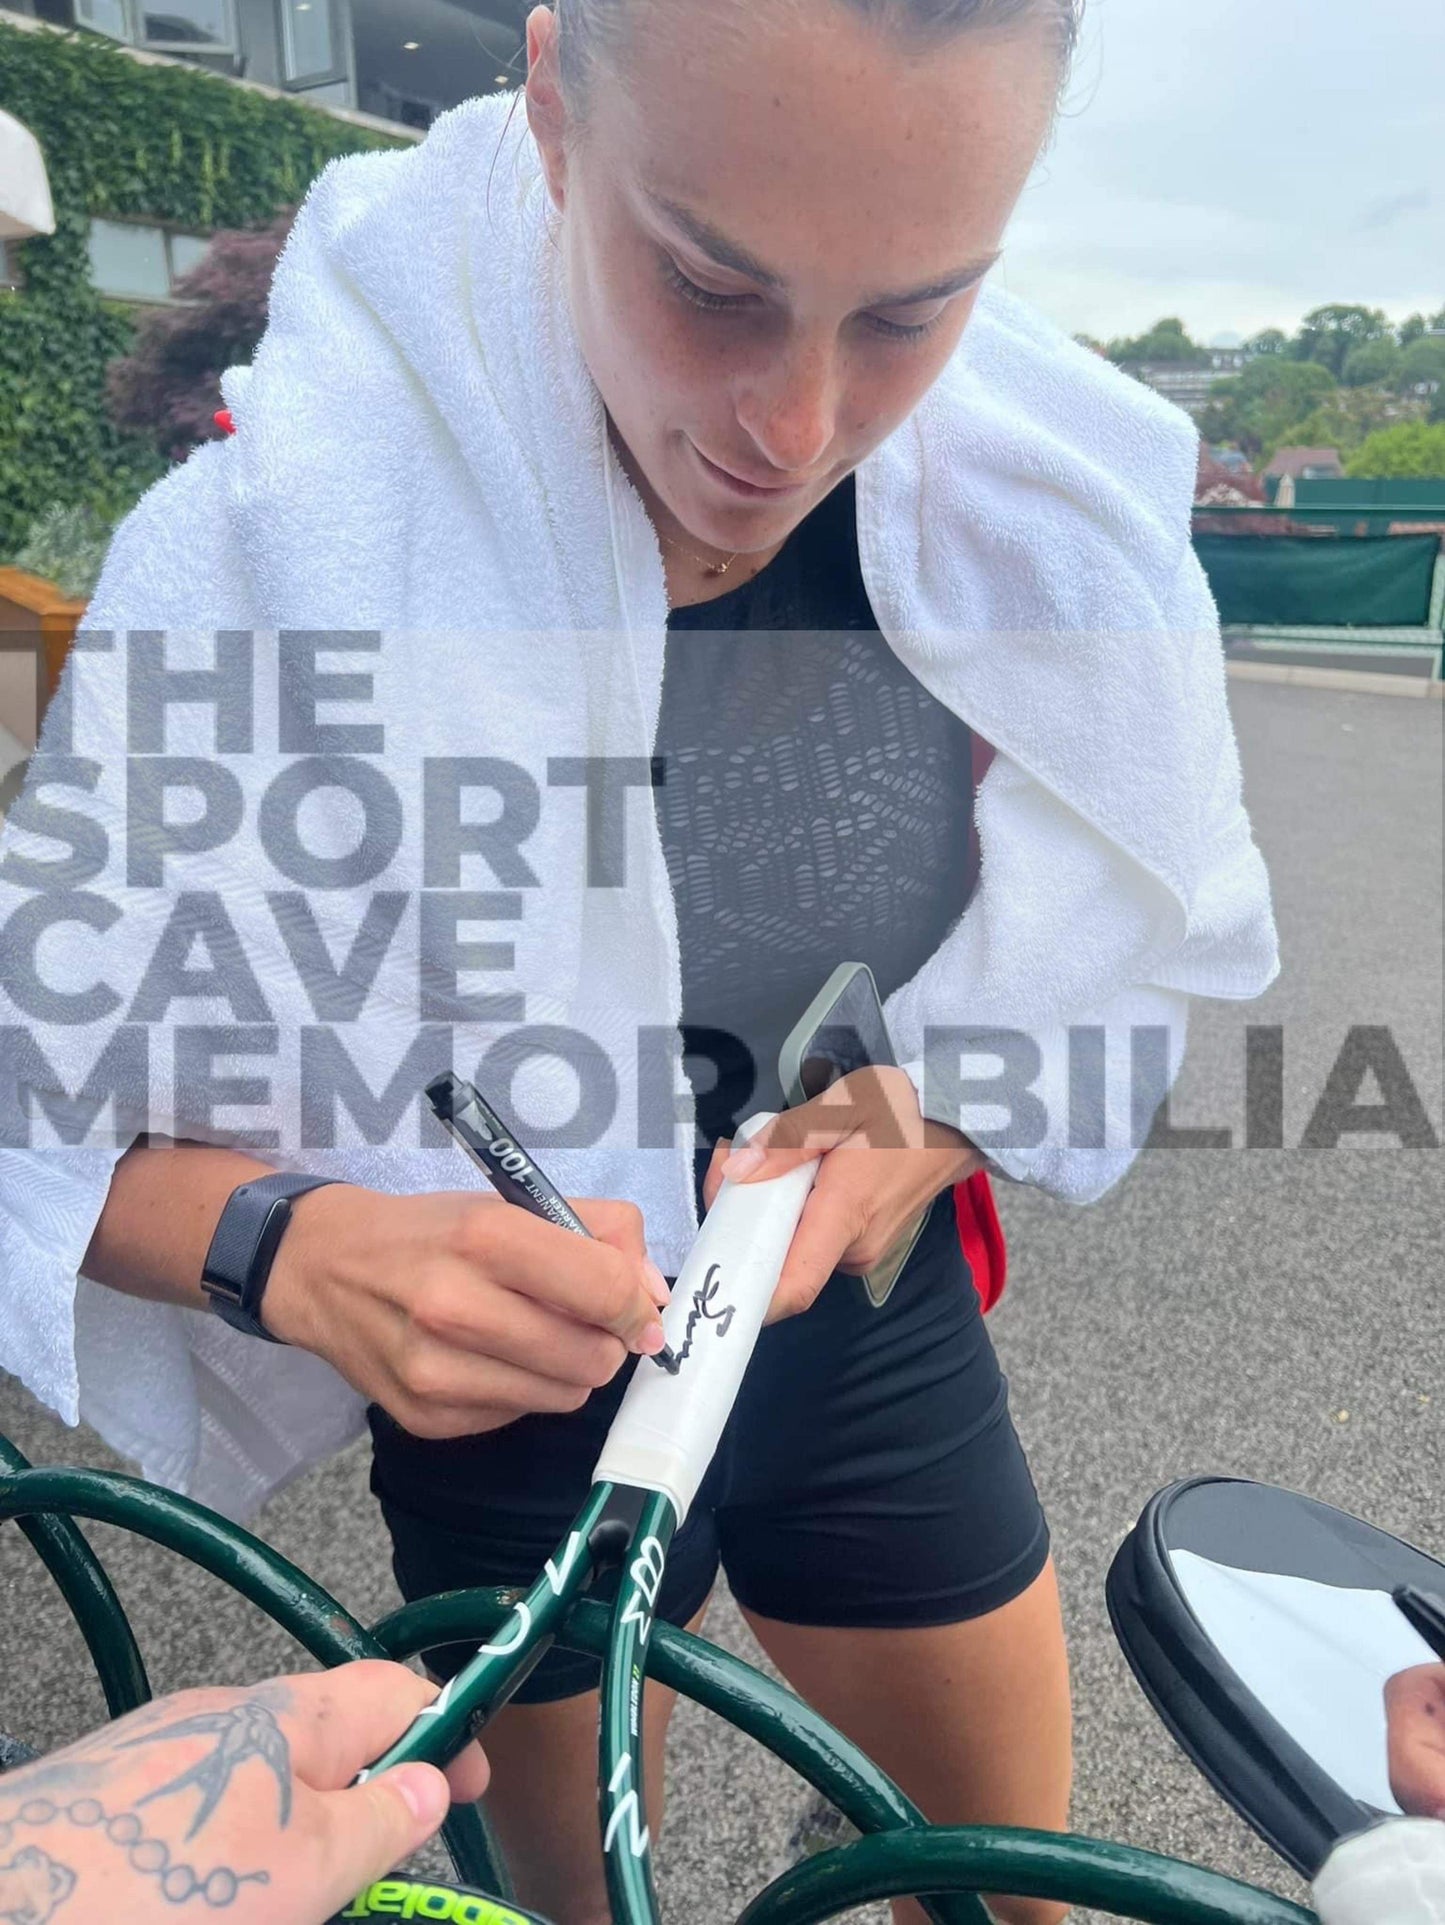 Aryna Sabalenka Signed Babolet Wimbledon Tennis Racket